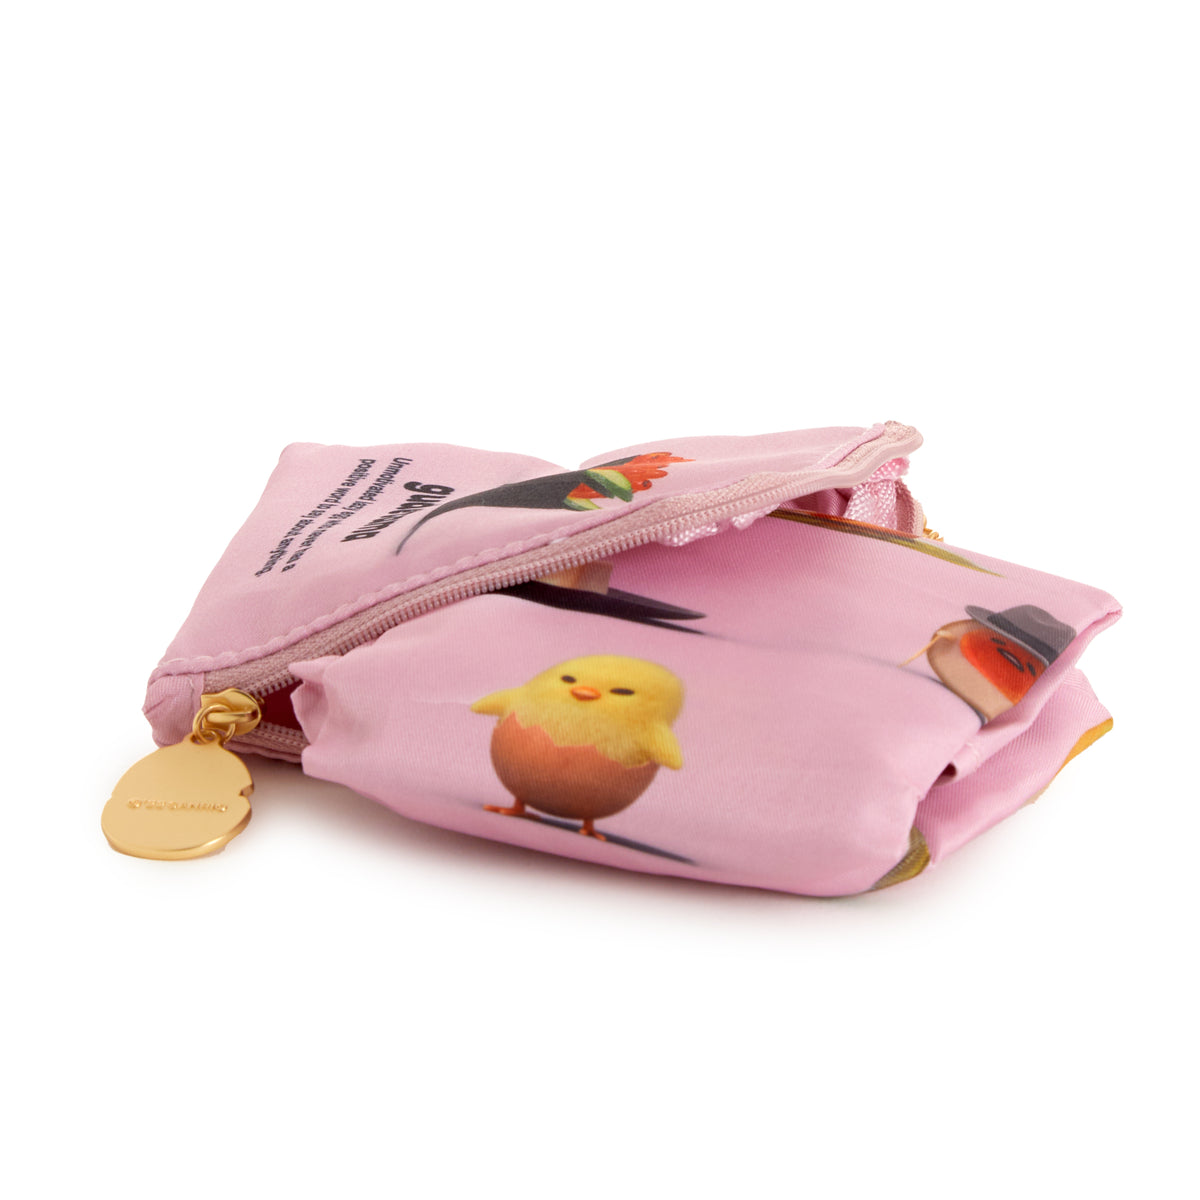 Gudetama Reusable Tote Bag (An Eggcellent Adventure Series) Bags Global Original   